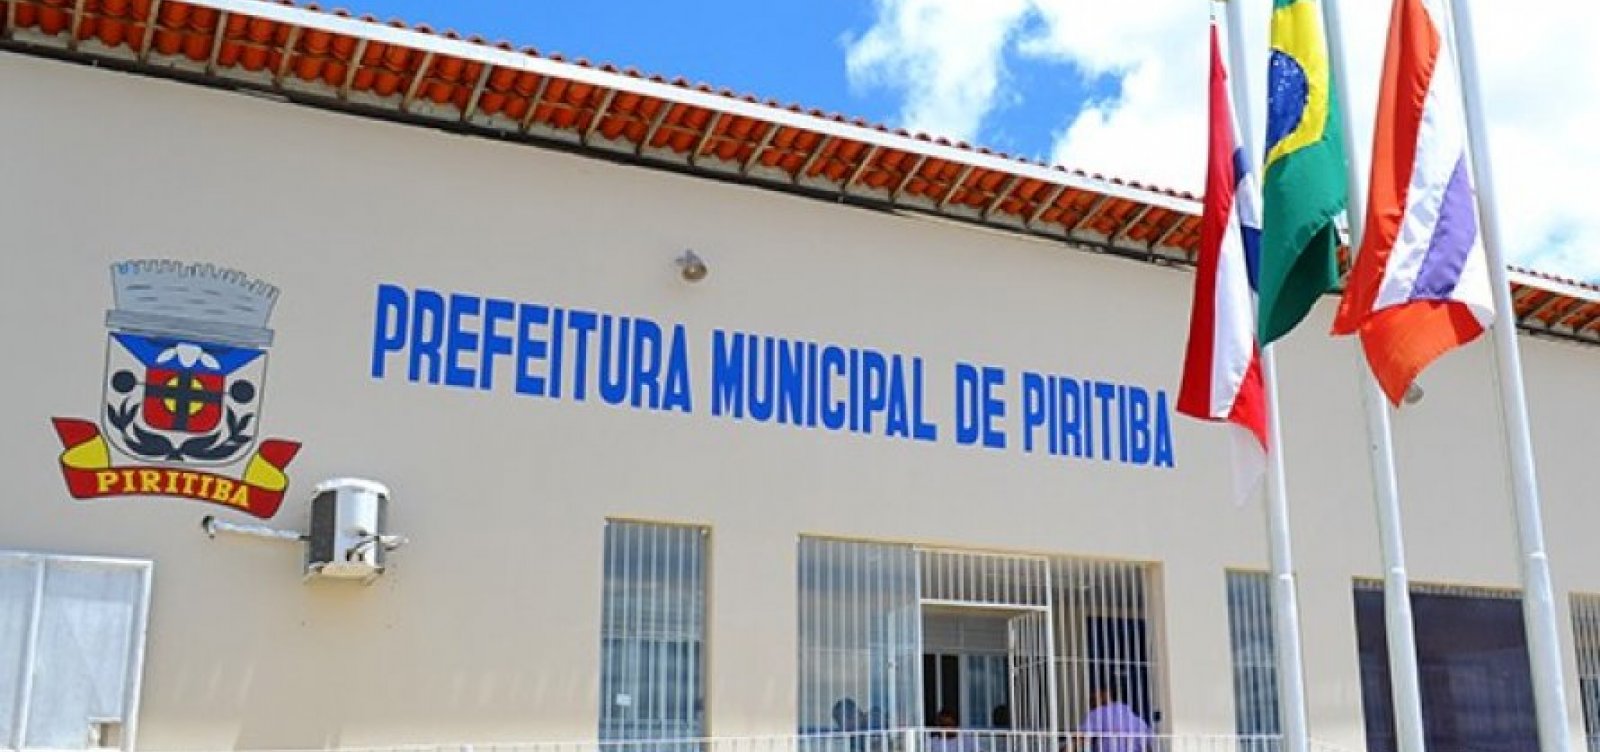 TCM fará auditoria na prefeitura de Piritiba após suspeita de superfaturamento em contratos